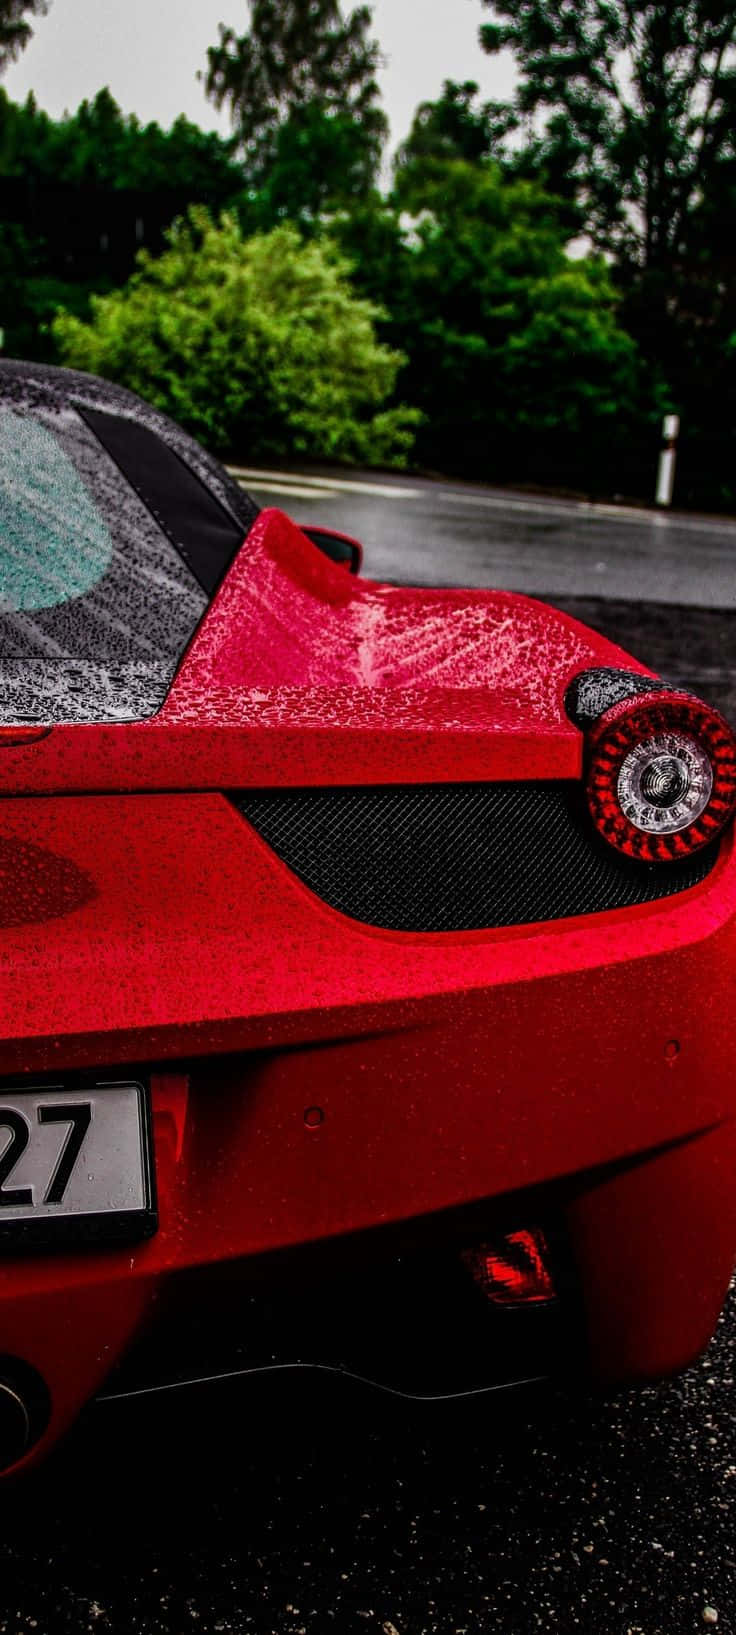 Fondode Pantalla De Un Iphone Xs Max Con El Auto Rojo Ferrari 458 De Project Cars 2.